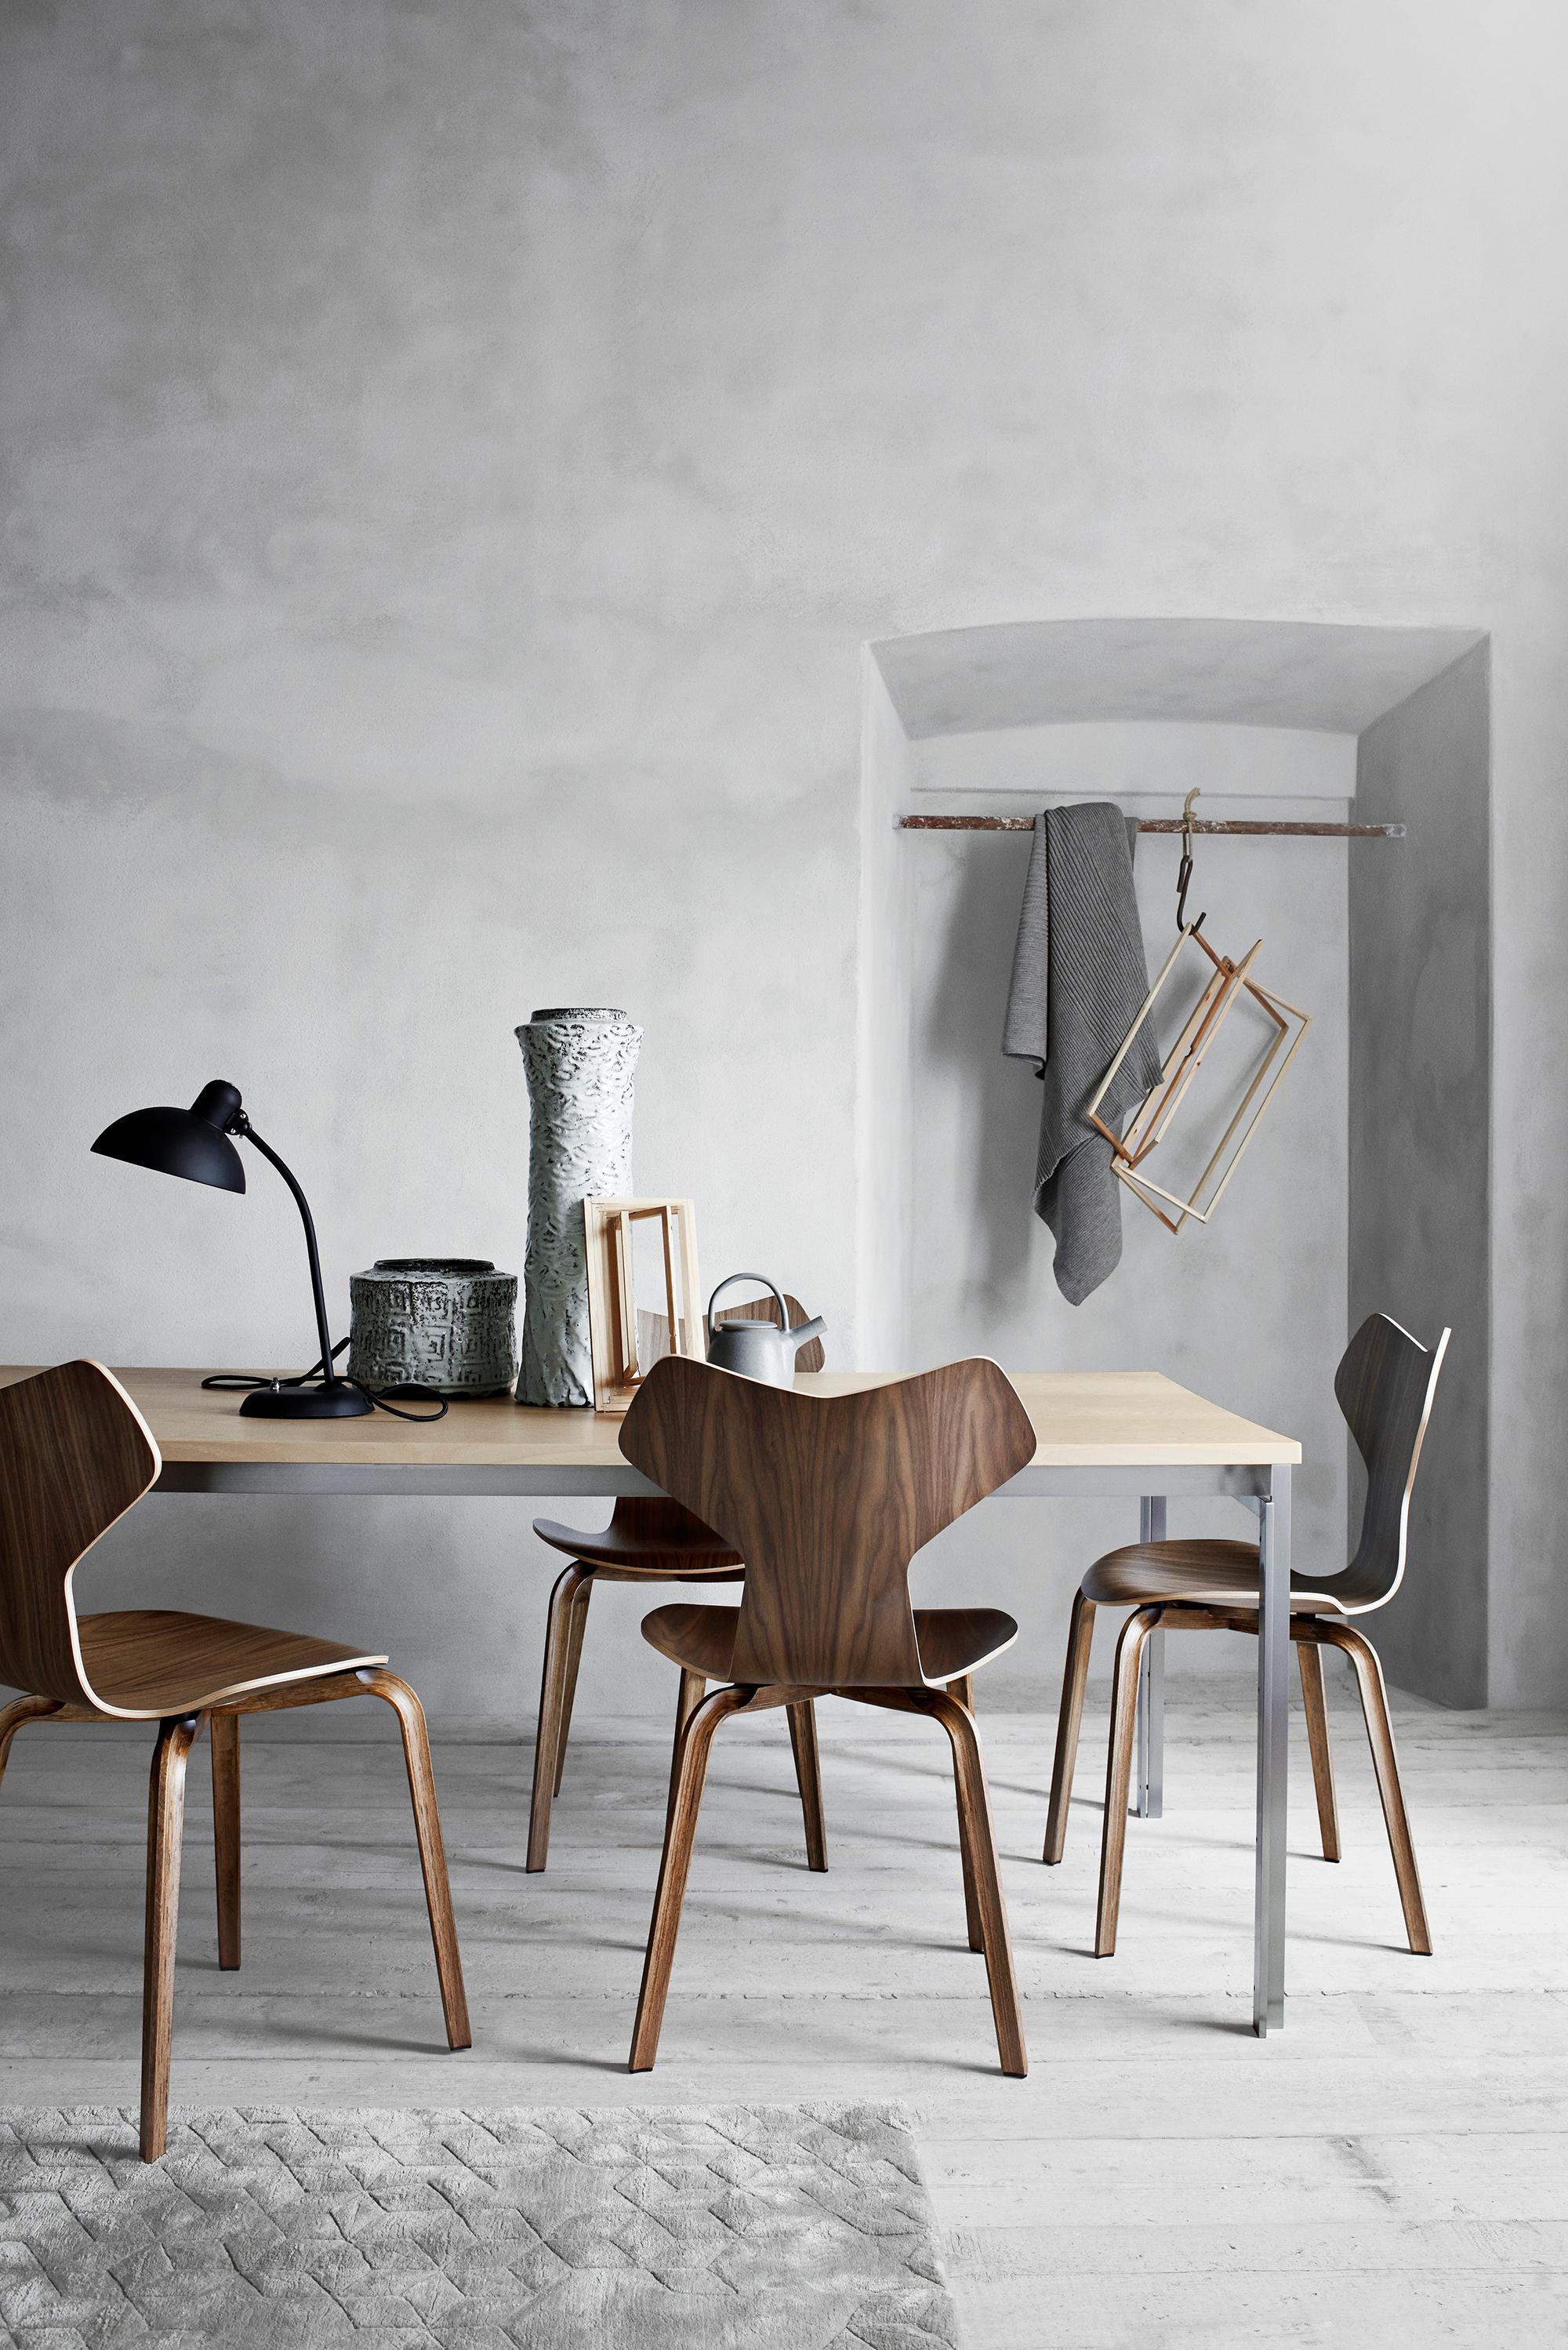 Arne Jacobsen 'Grand Prix' Stuhl für Fritz Hansen in Teillederpolsterung.
 
Fritz Hansen wurde 1872 gegründet und ist zum Synonym für legendäres dänisches Design geworden. Die Marke kombiniert zeitlose Handwerkskunst mit einem Schwerpunkt auf